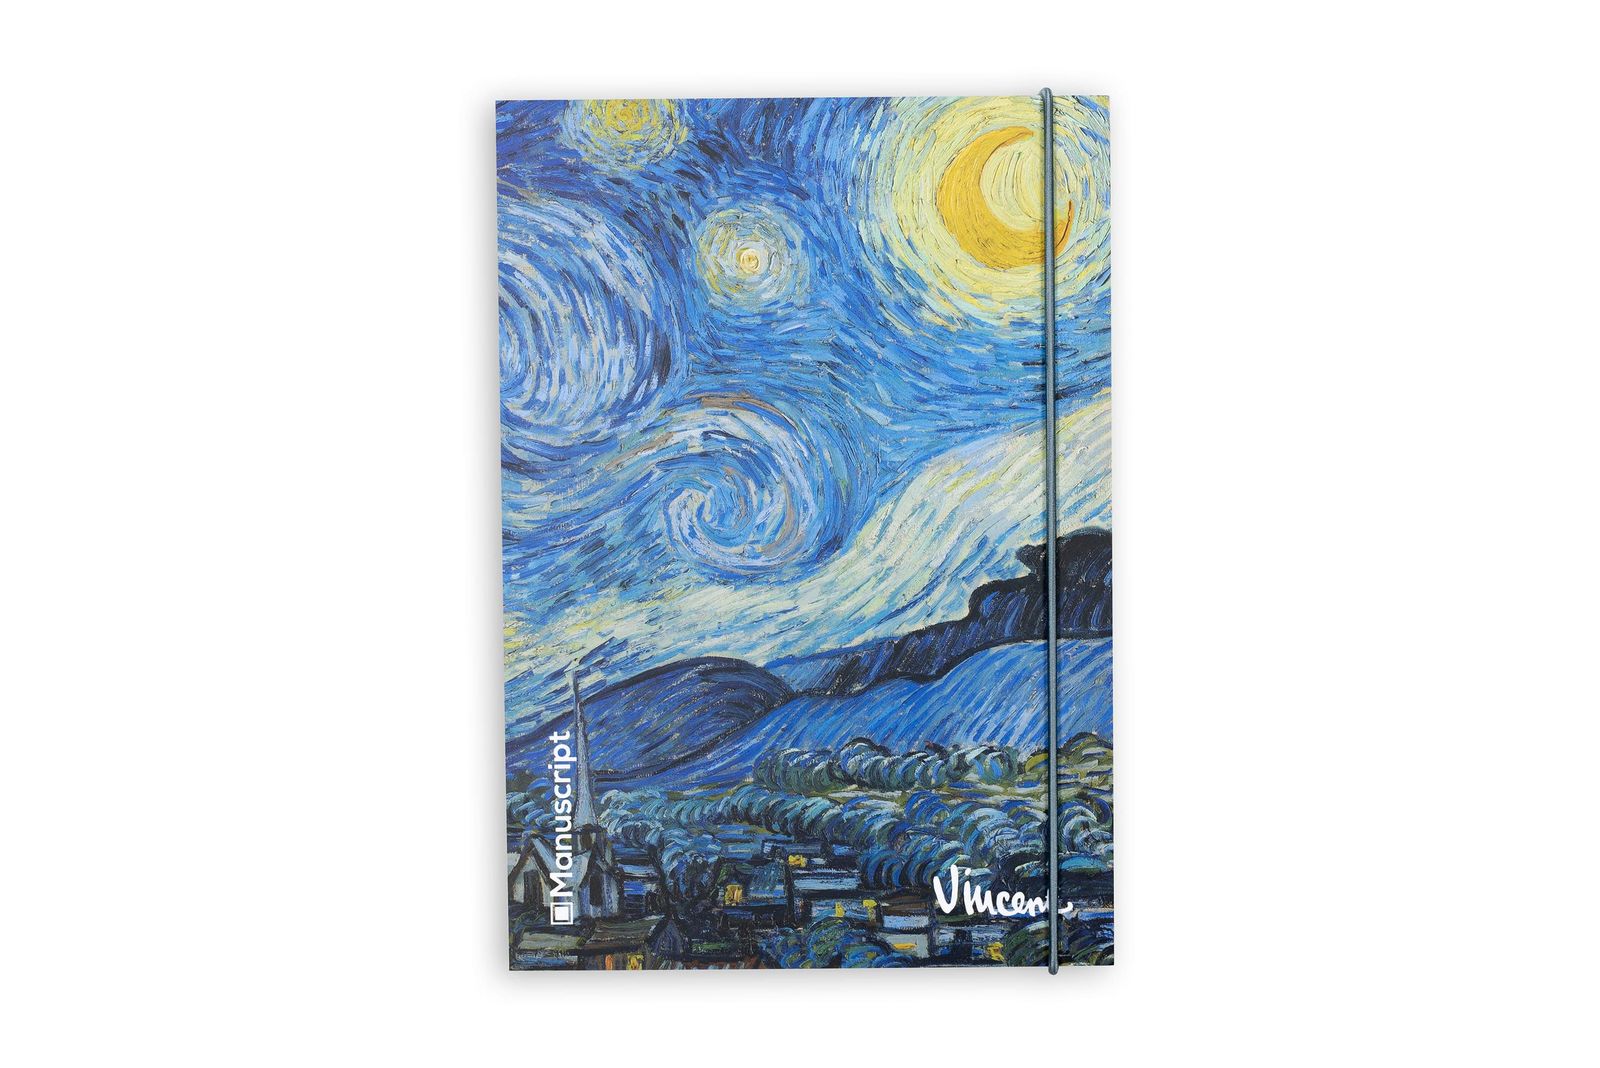 Скетчбук V. Gogh 1889 S Plus A5 Чисті 160 сторінок з відкритою палітуркою - 335 грн купити в подарунок в Києві і Україні від UAmade, код: 55296